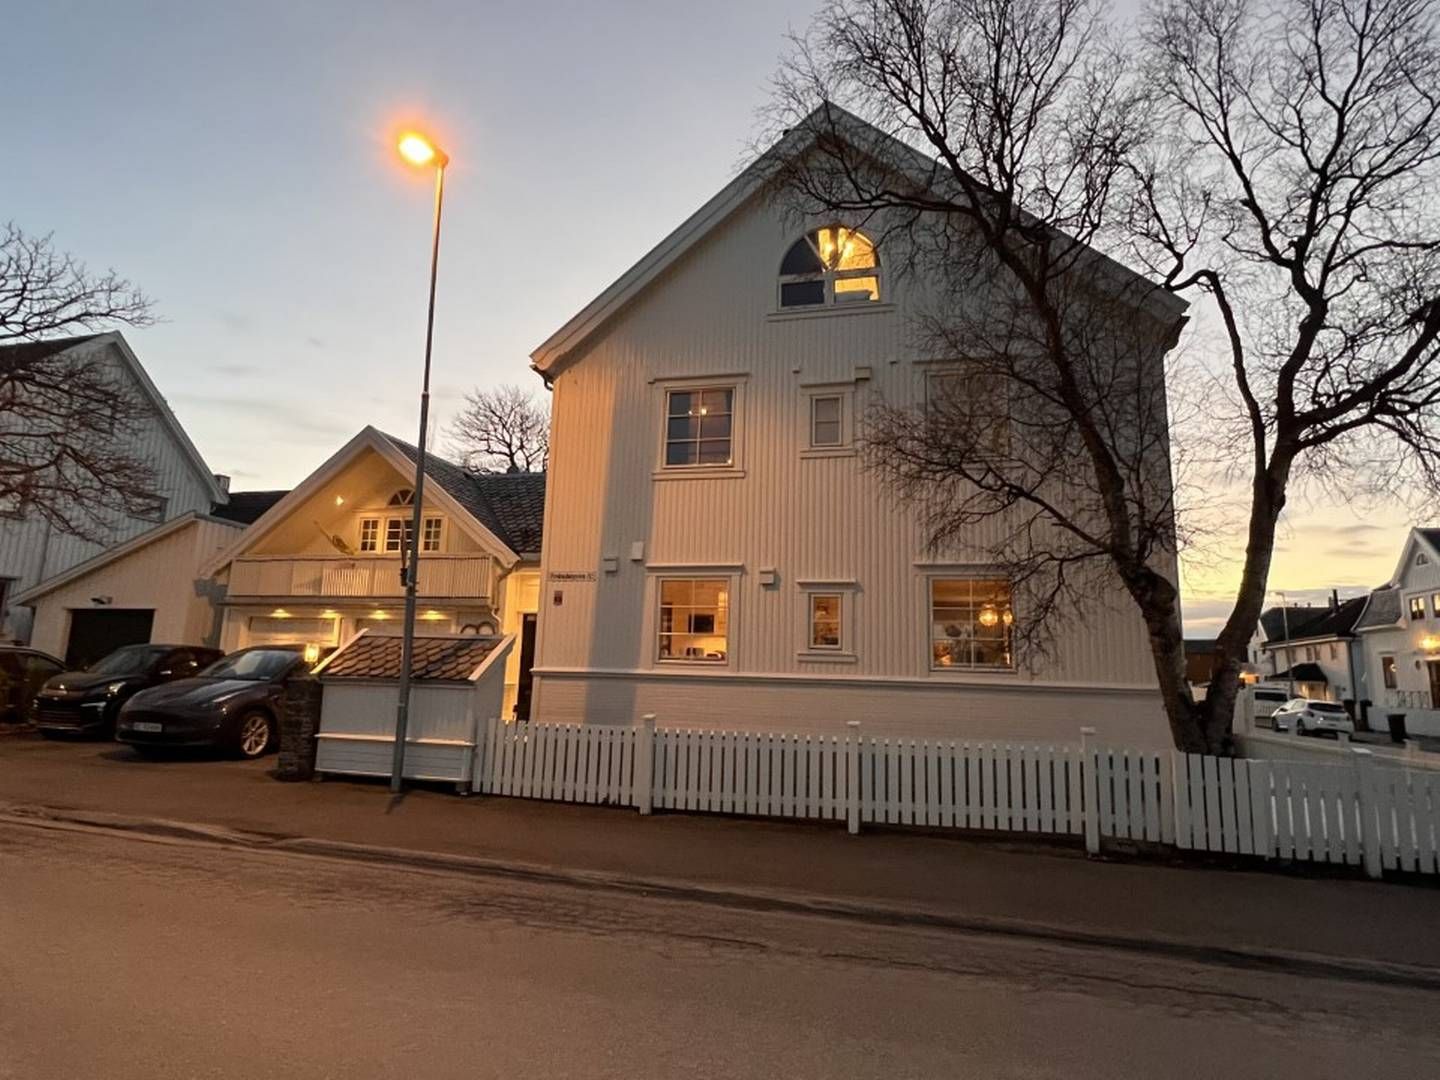 VILLA: Eiendomsinvestoren Tord Kolstad har lenge forsøkt å selge sin romslige villa i Bodø sentrum. Nå ligger den til utleie istedet. | Foto: Espen Bless Stenberg